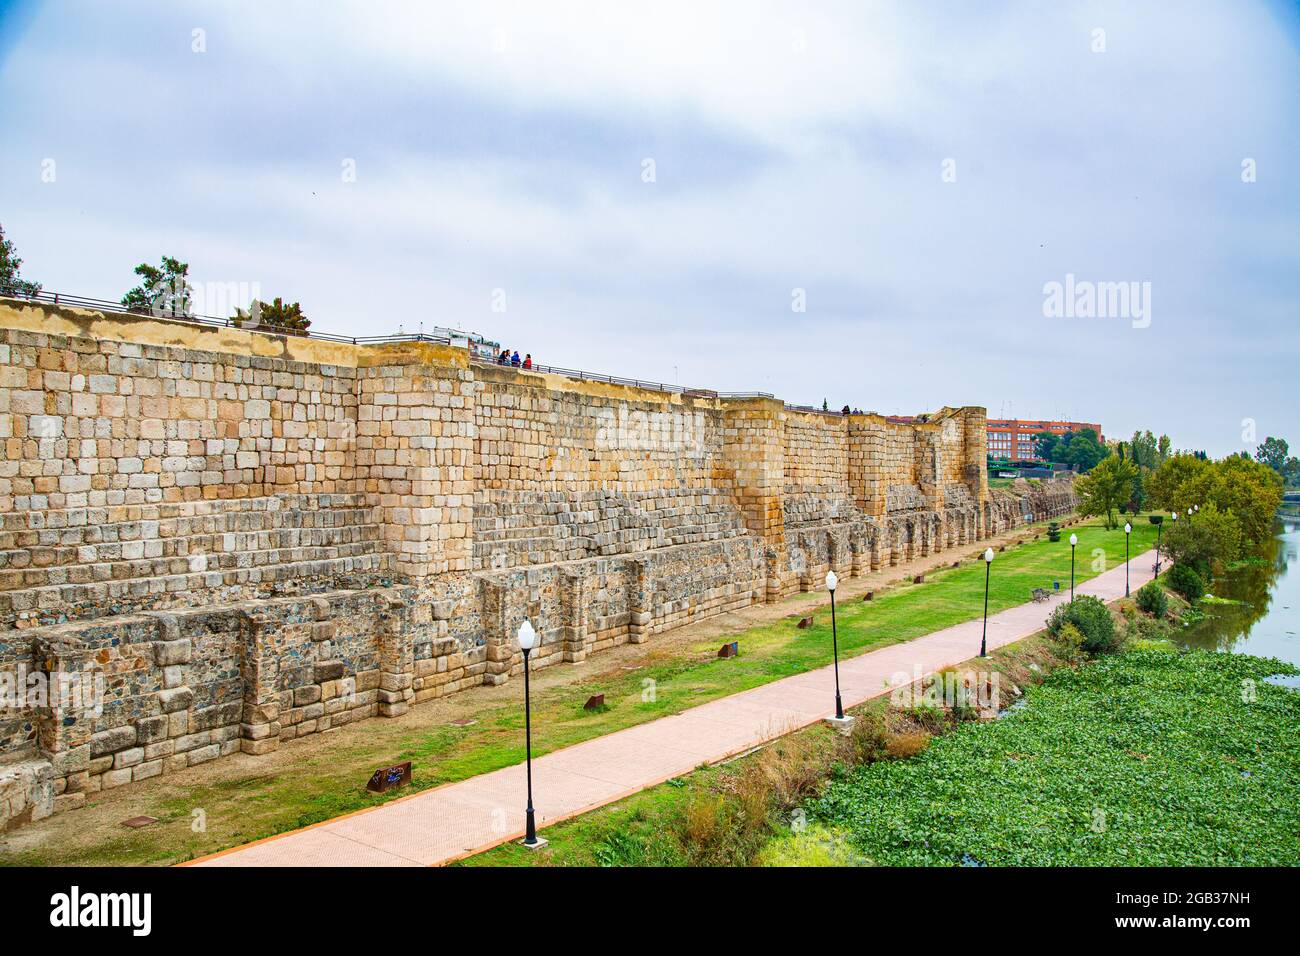 Vista delle antiche mura difensive in pietra beige, con interni che conducono a vecchi templi e viste esterne del fiume Foto Stock